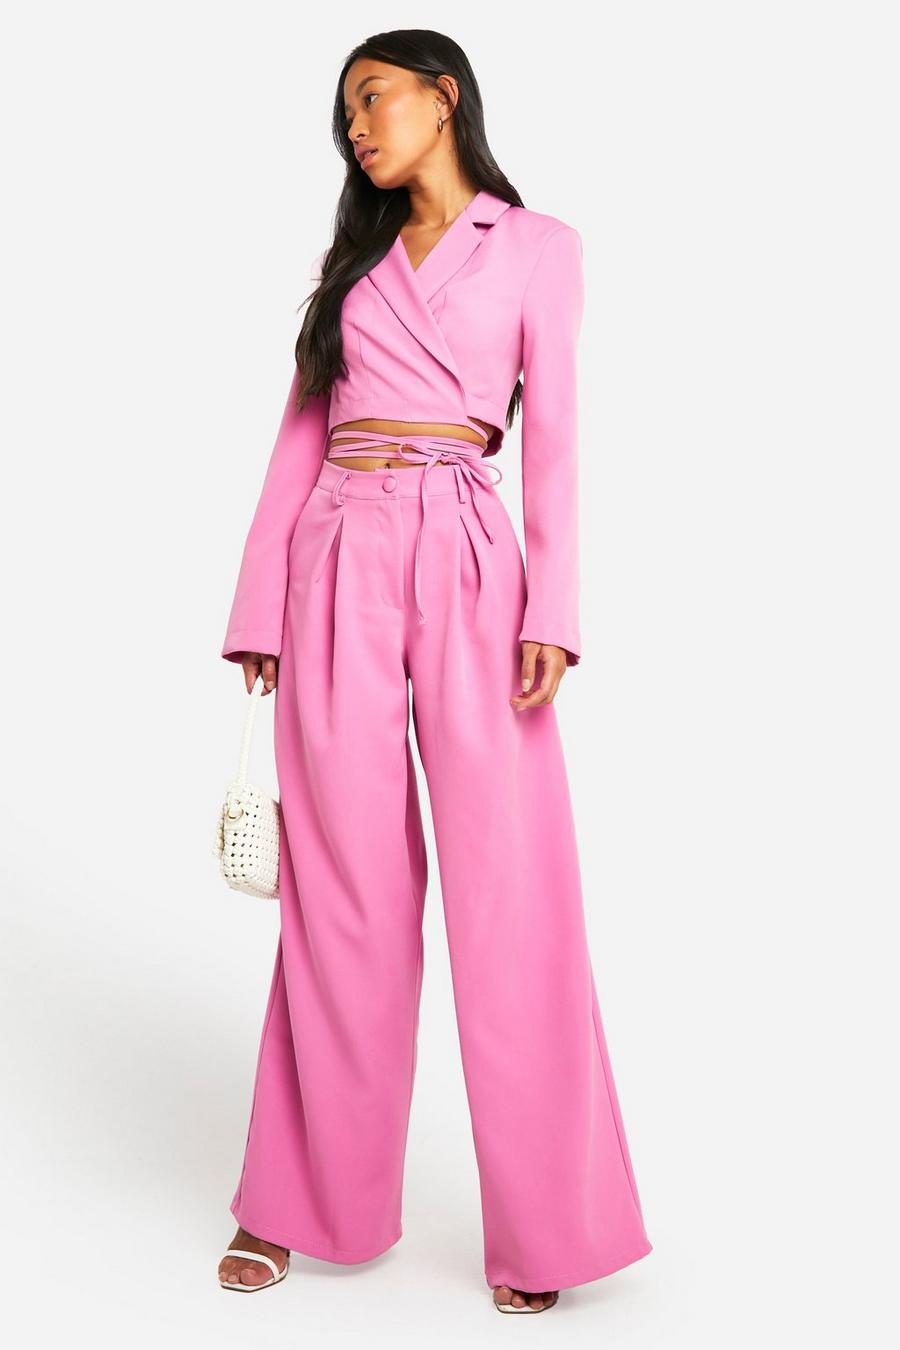 Pantalón plisado entallado de pernera ancha, Candy pink